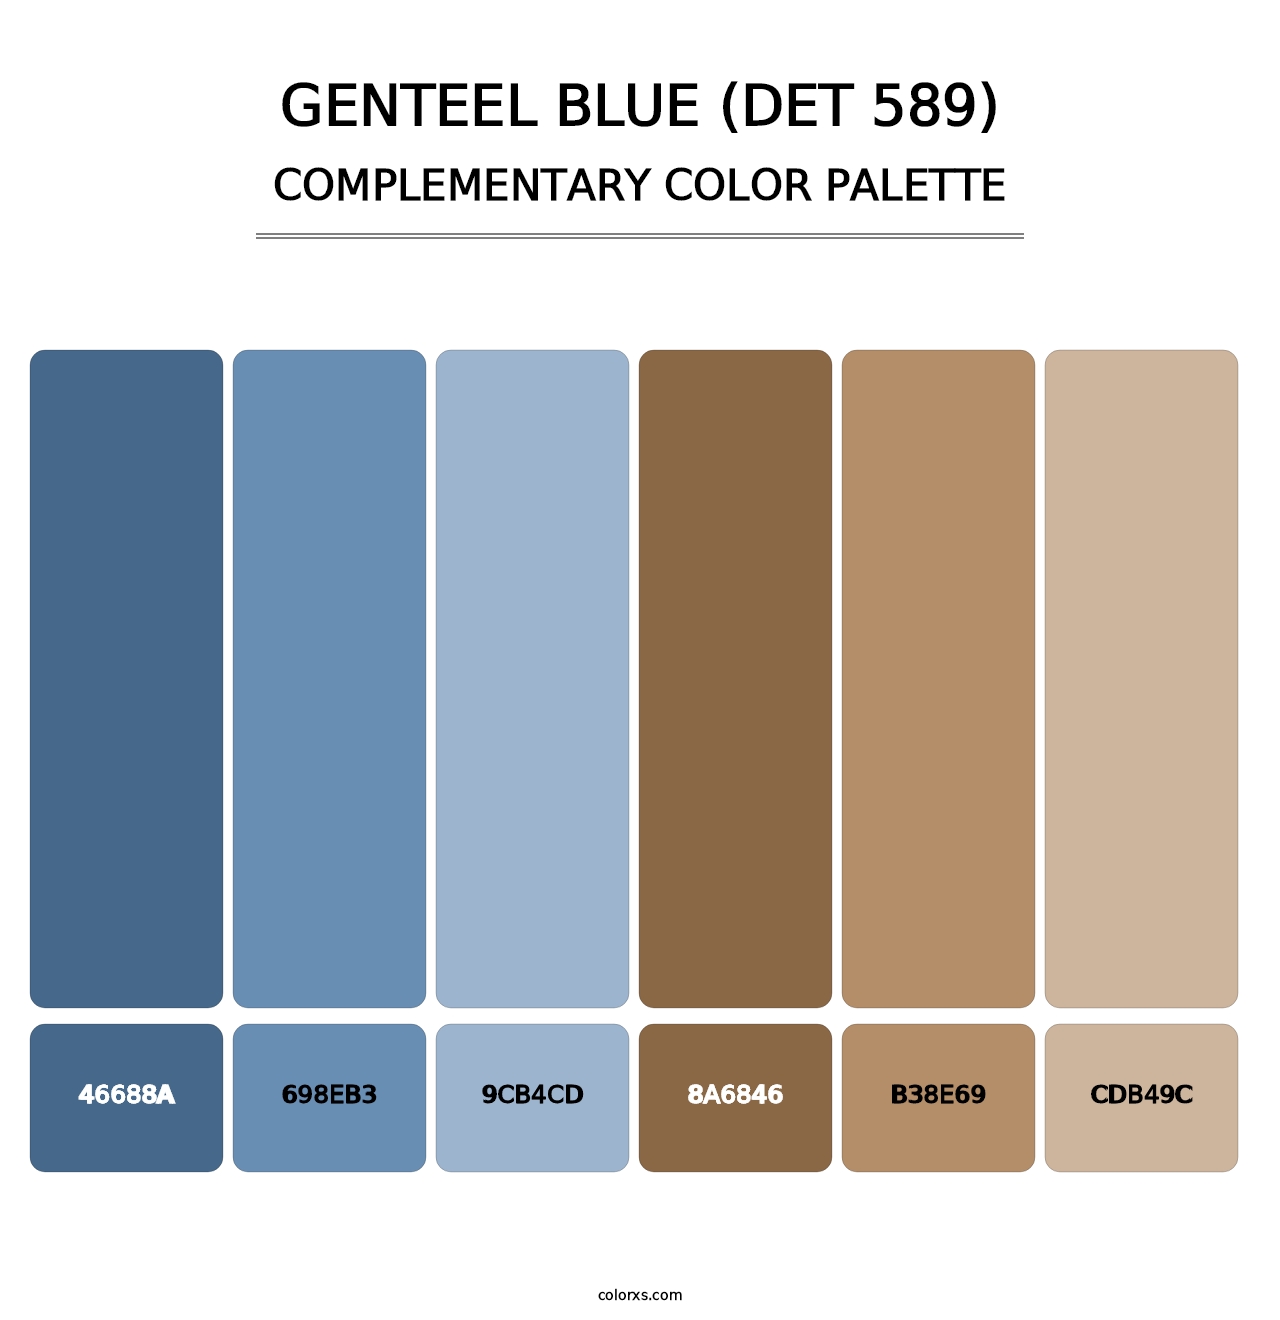 Genteel Blue (DET 589) - Complementary Color Palette